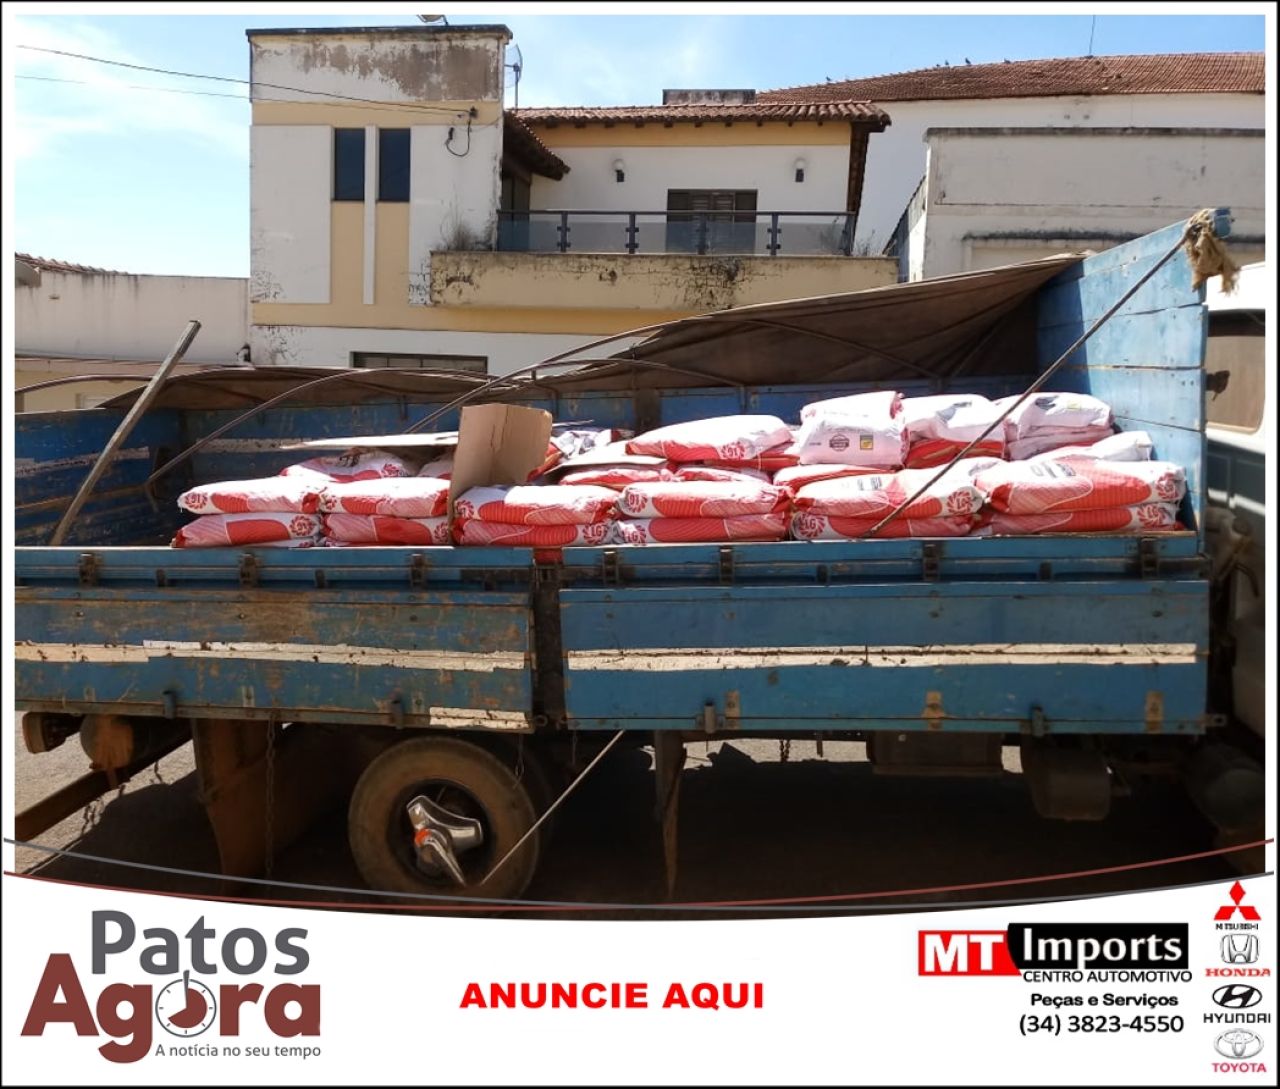 Polícia Civil apreende 240 sacas de sementes de milho avaliadas em 240 mil reais